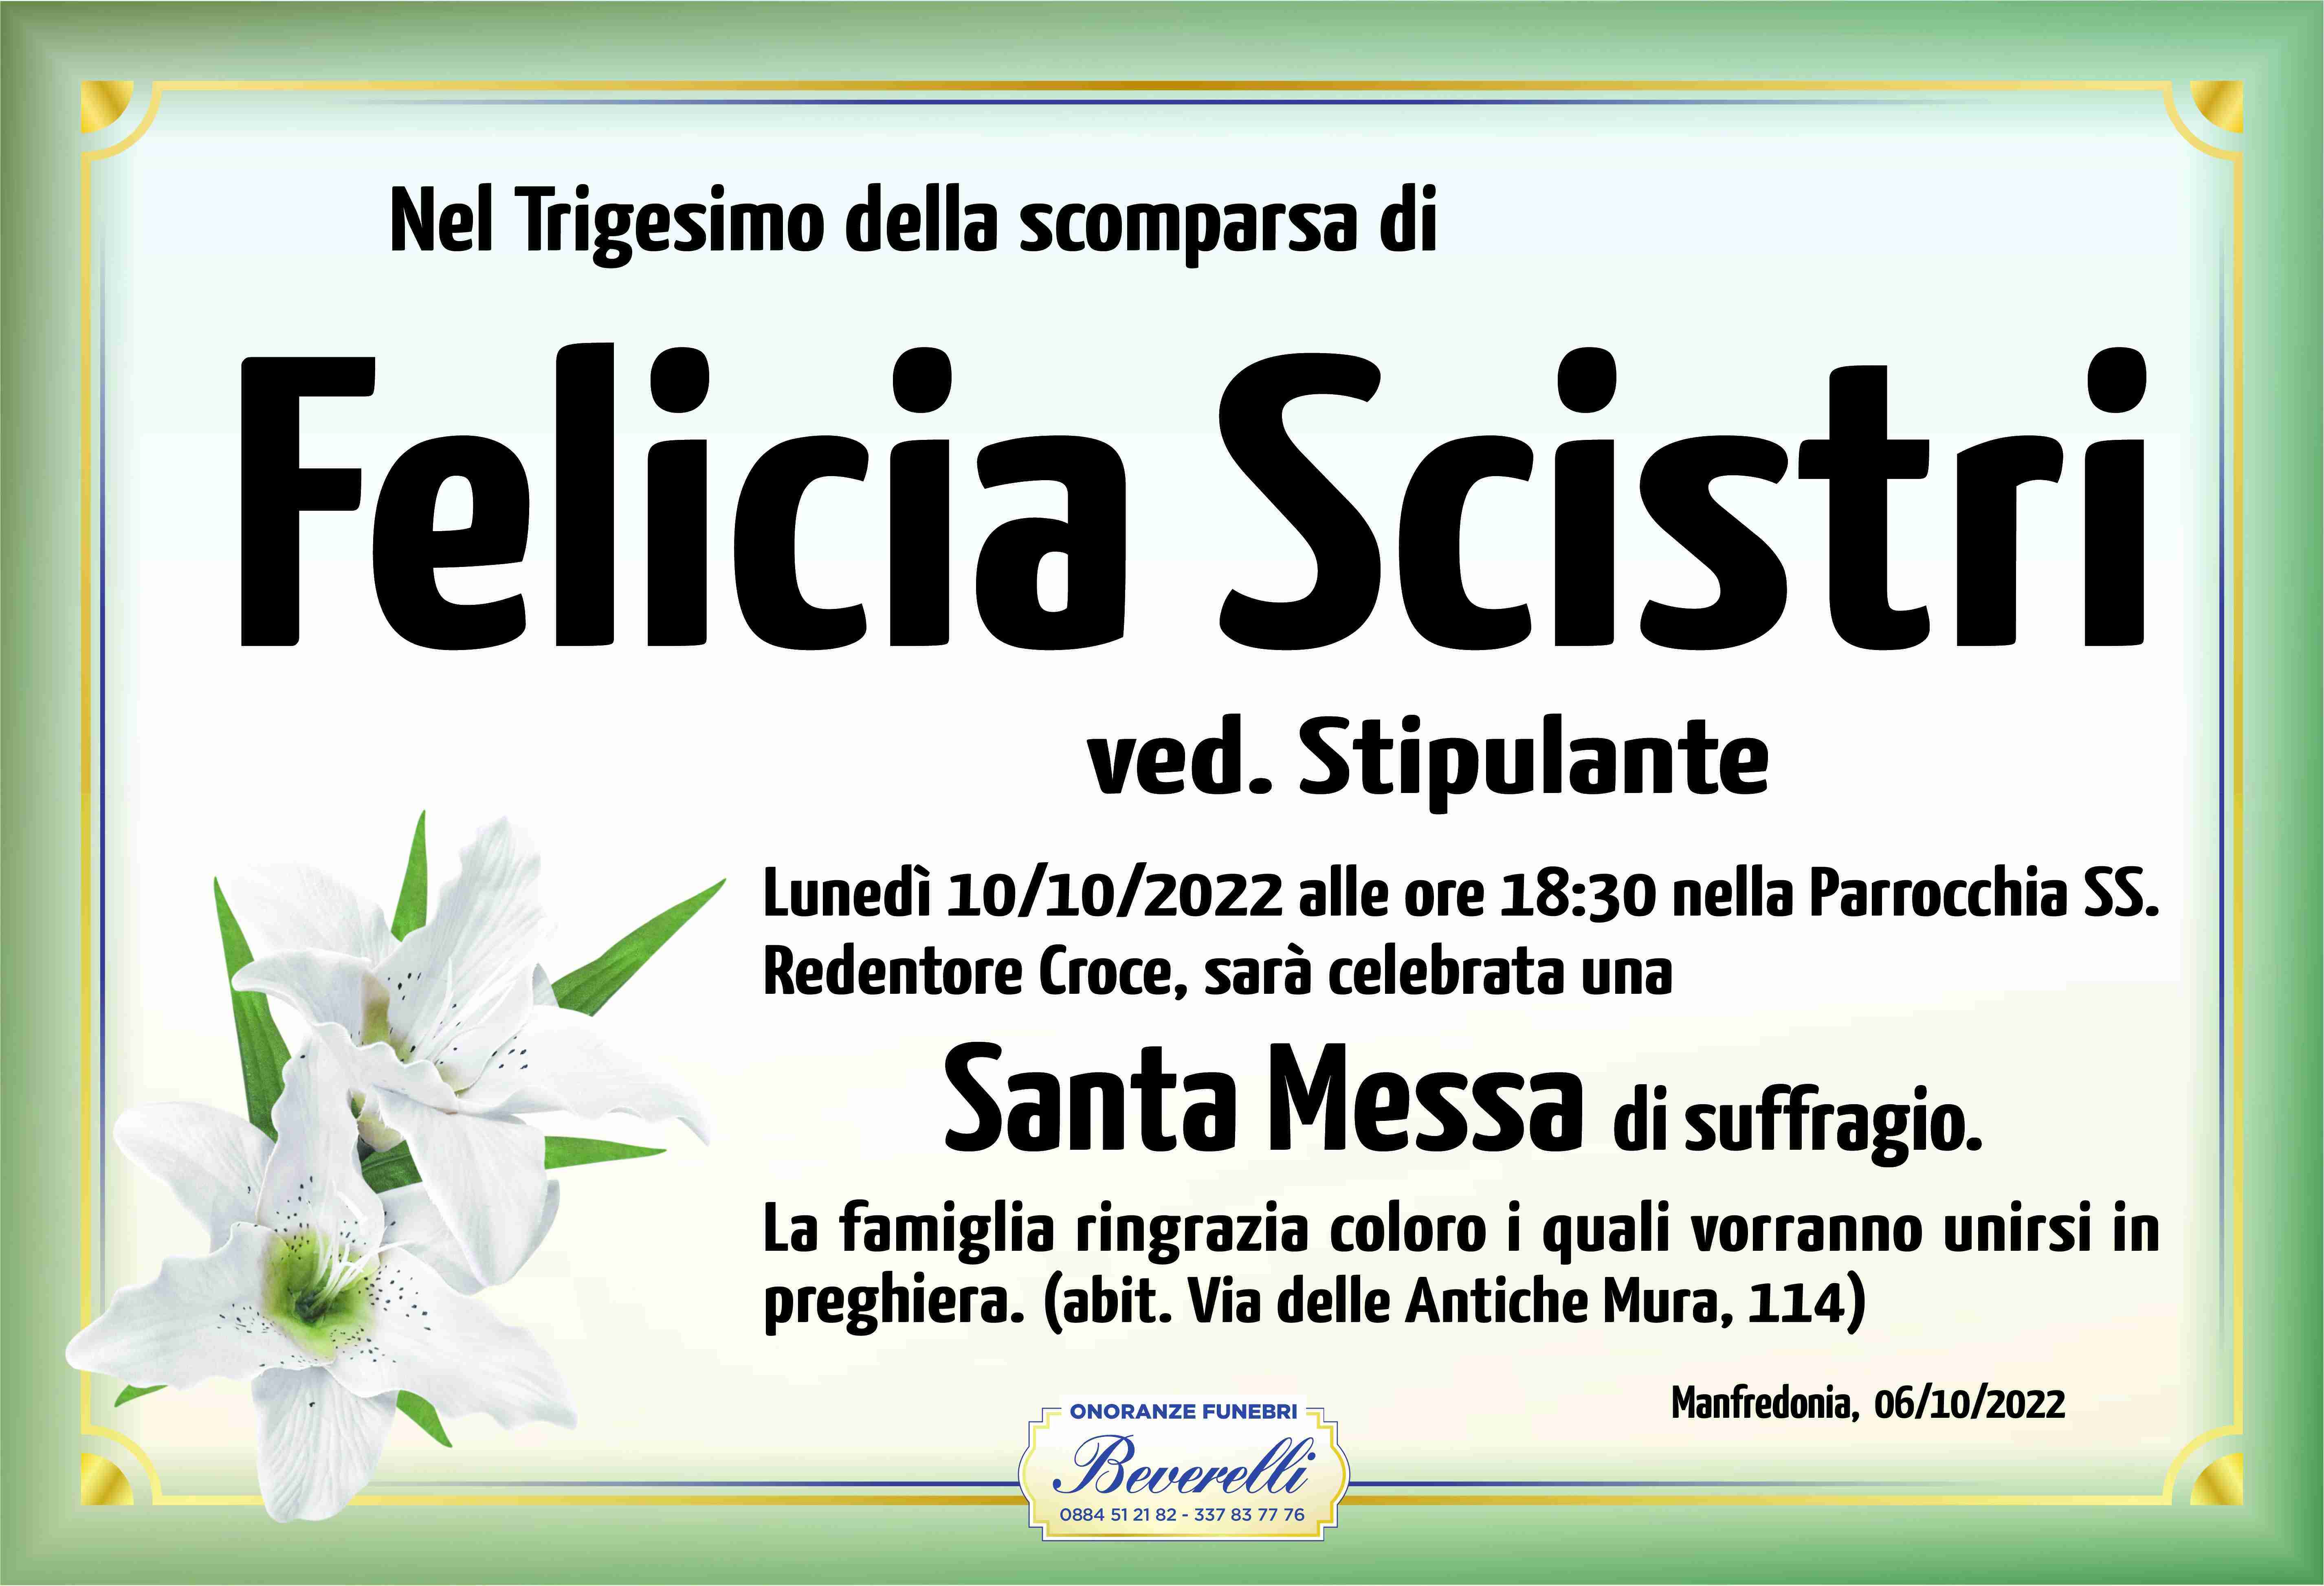 Felicia Scistri